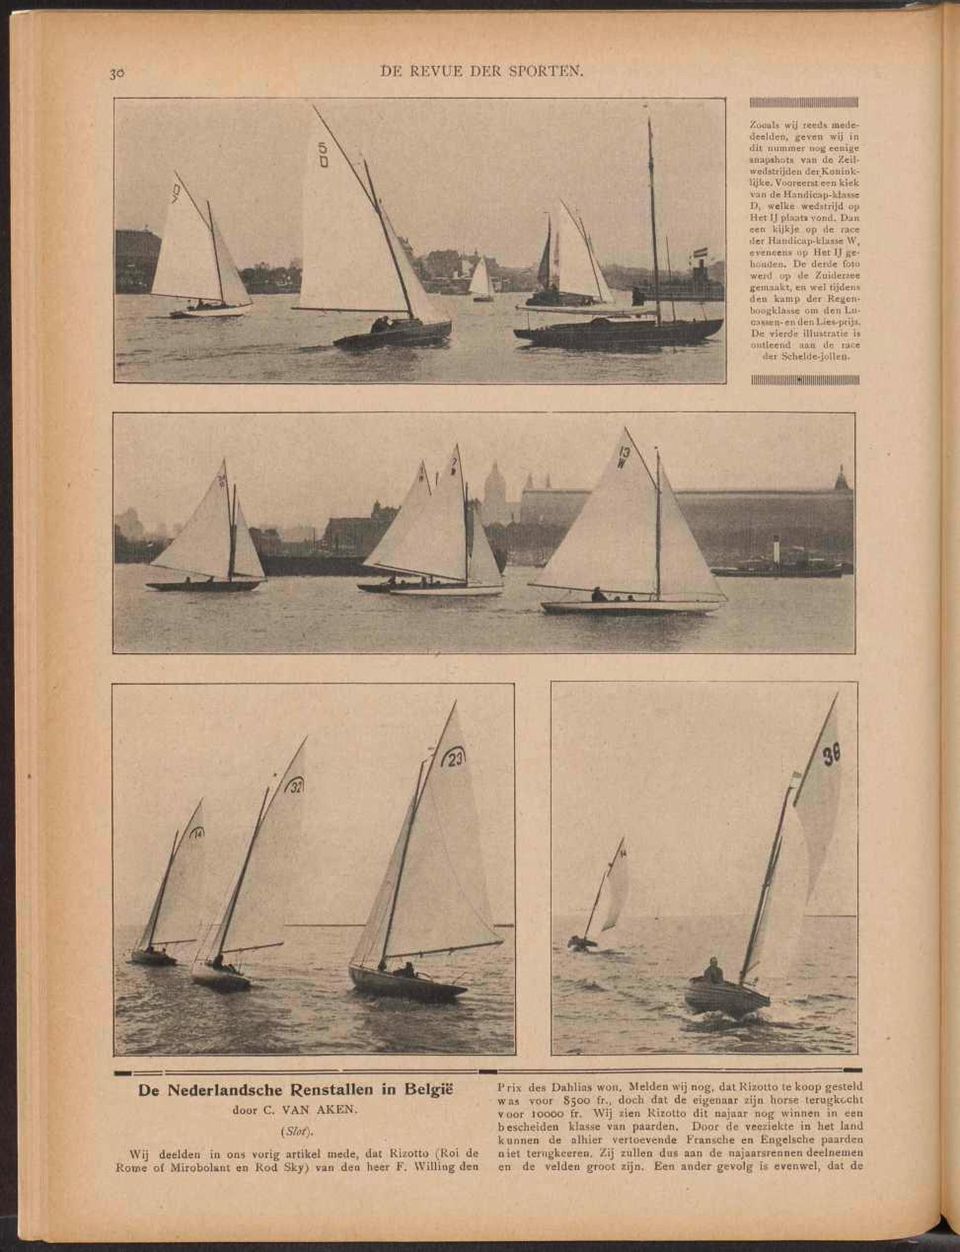 De derde foto werd op de Zuiderzee gemaakt, en wel tijdens den kamp der Regenboogklasse om den Lucassen-en den Lies-prijs. De vierde illustratie is ontleend aan de race der Schelde-jollen.